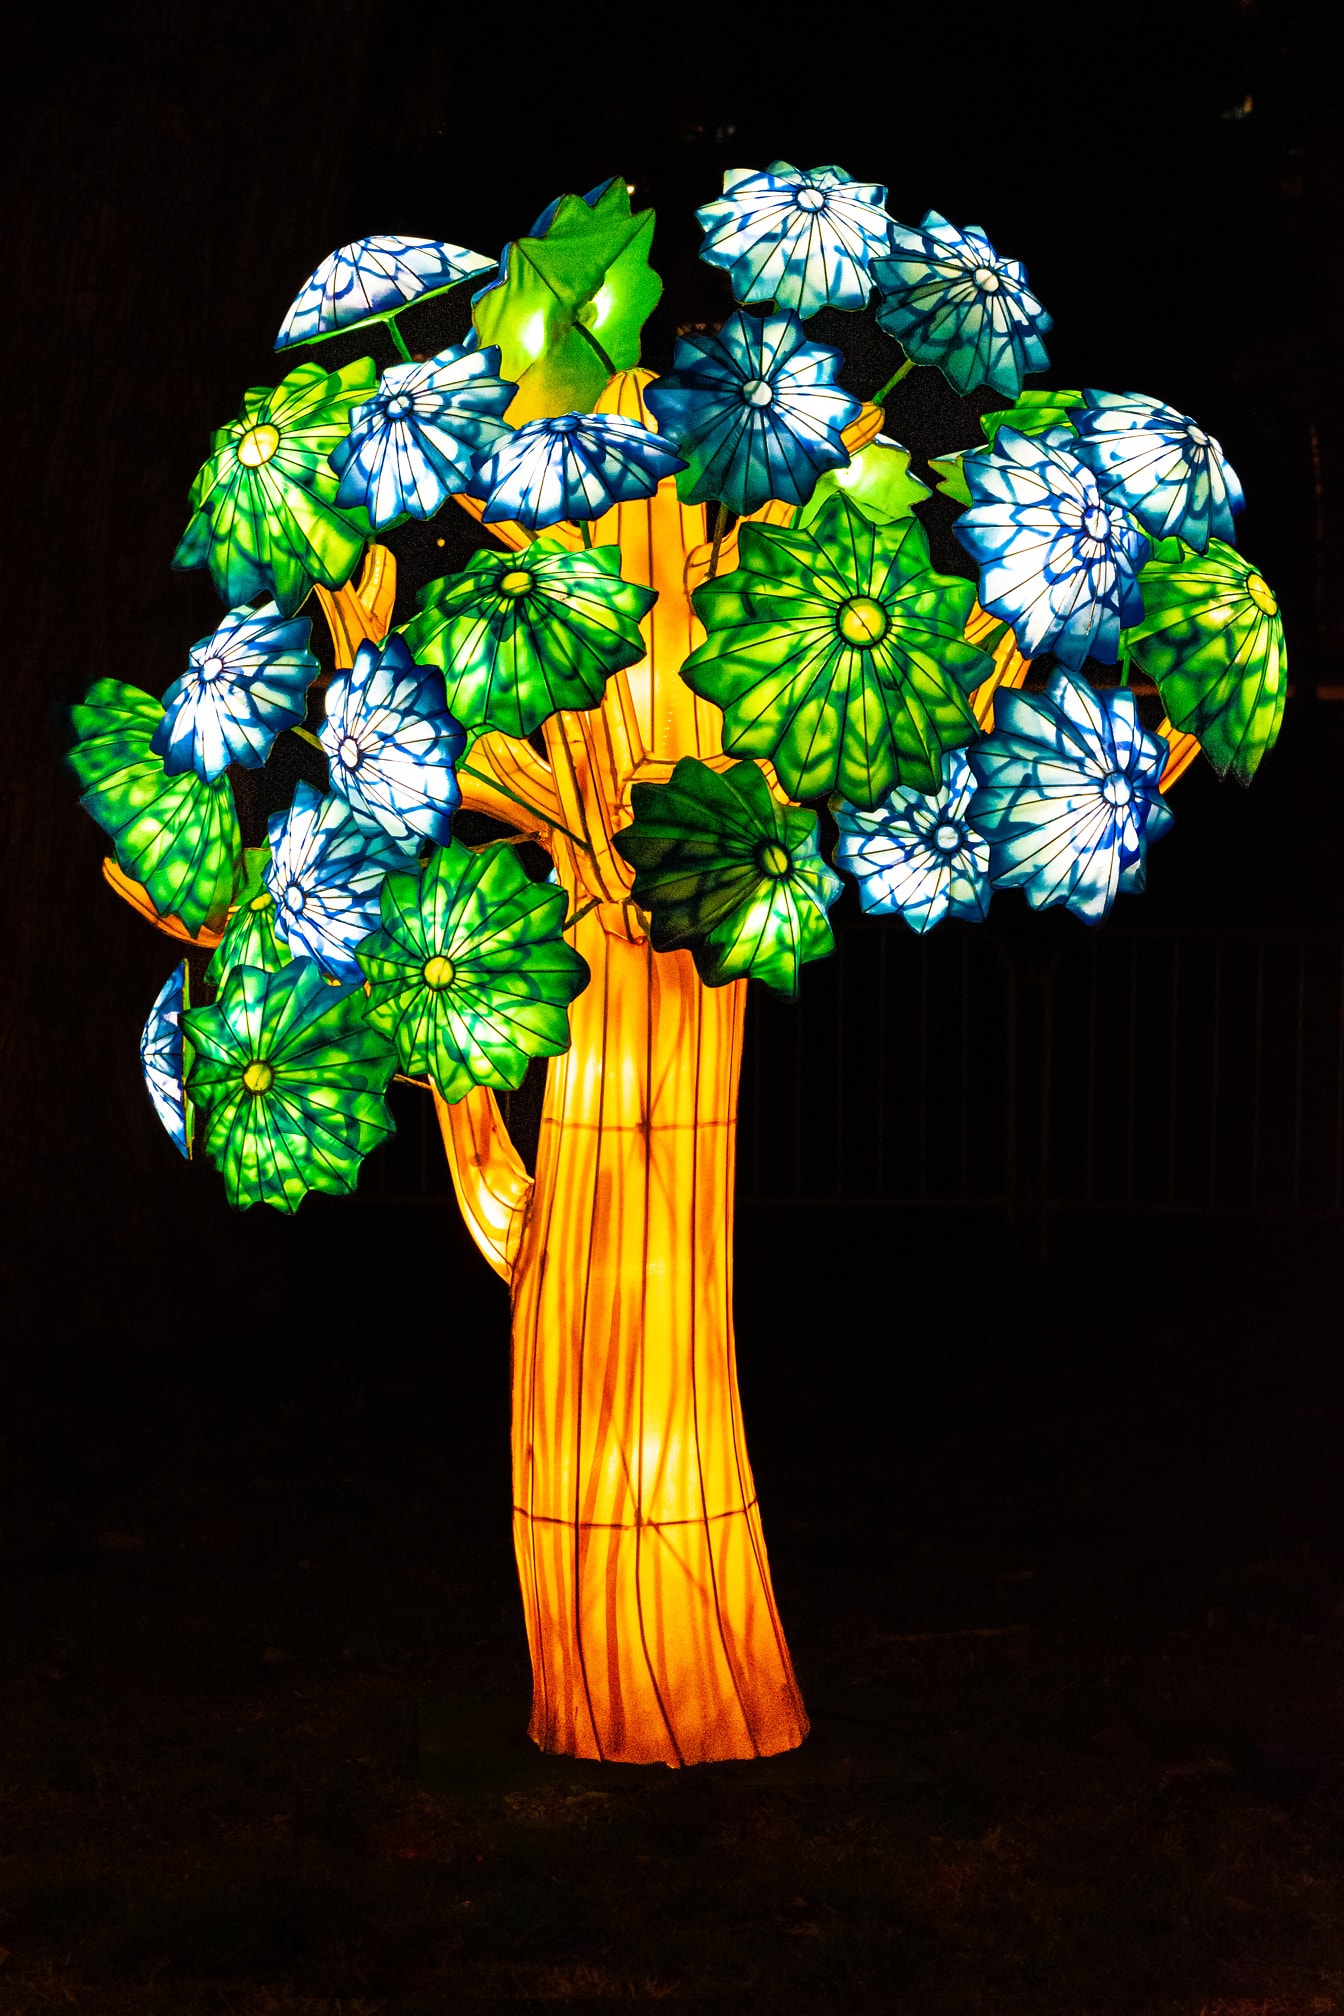 Žiariaca socha stromu s kvetmi na čínskom festivale svetla